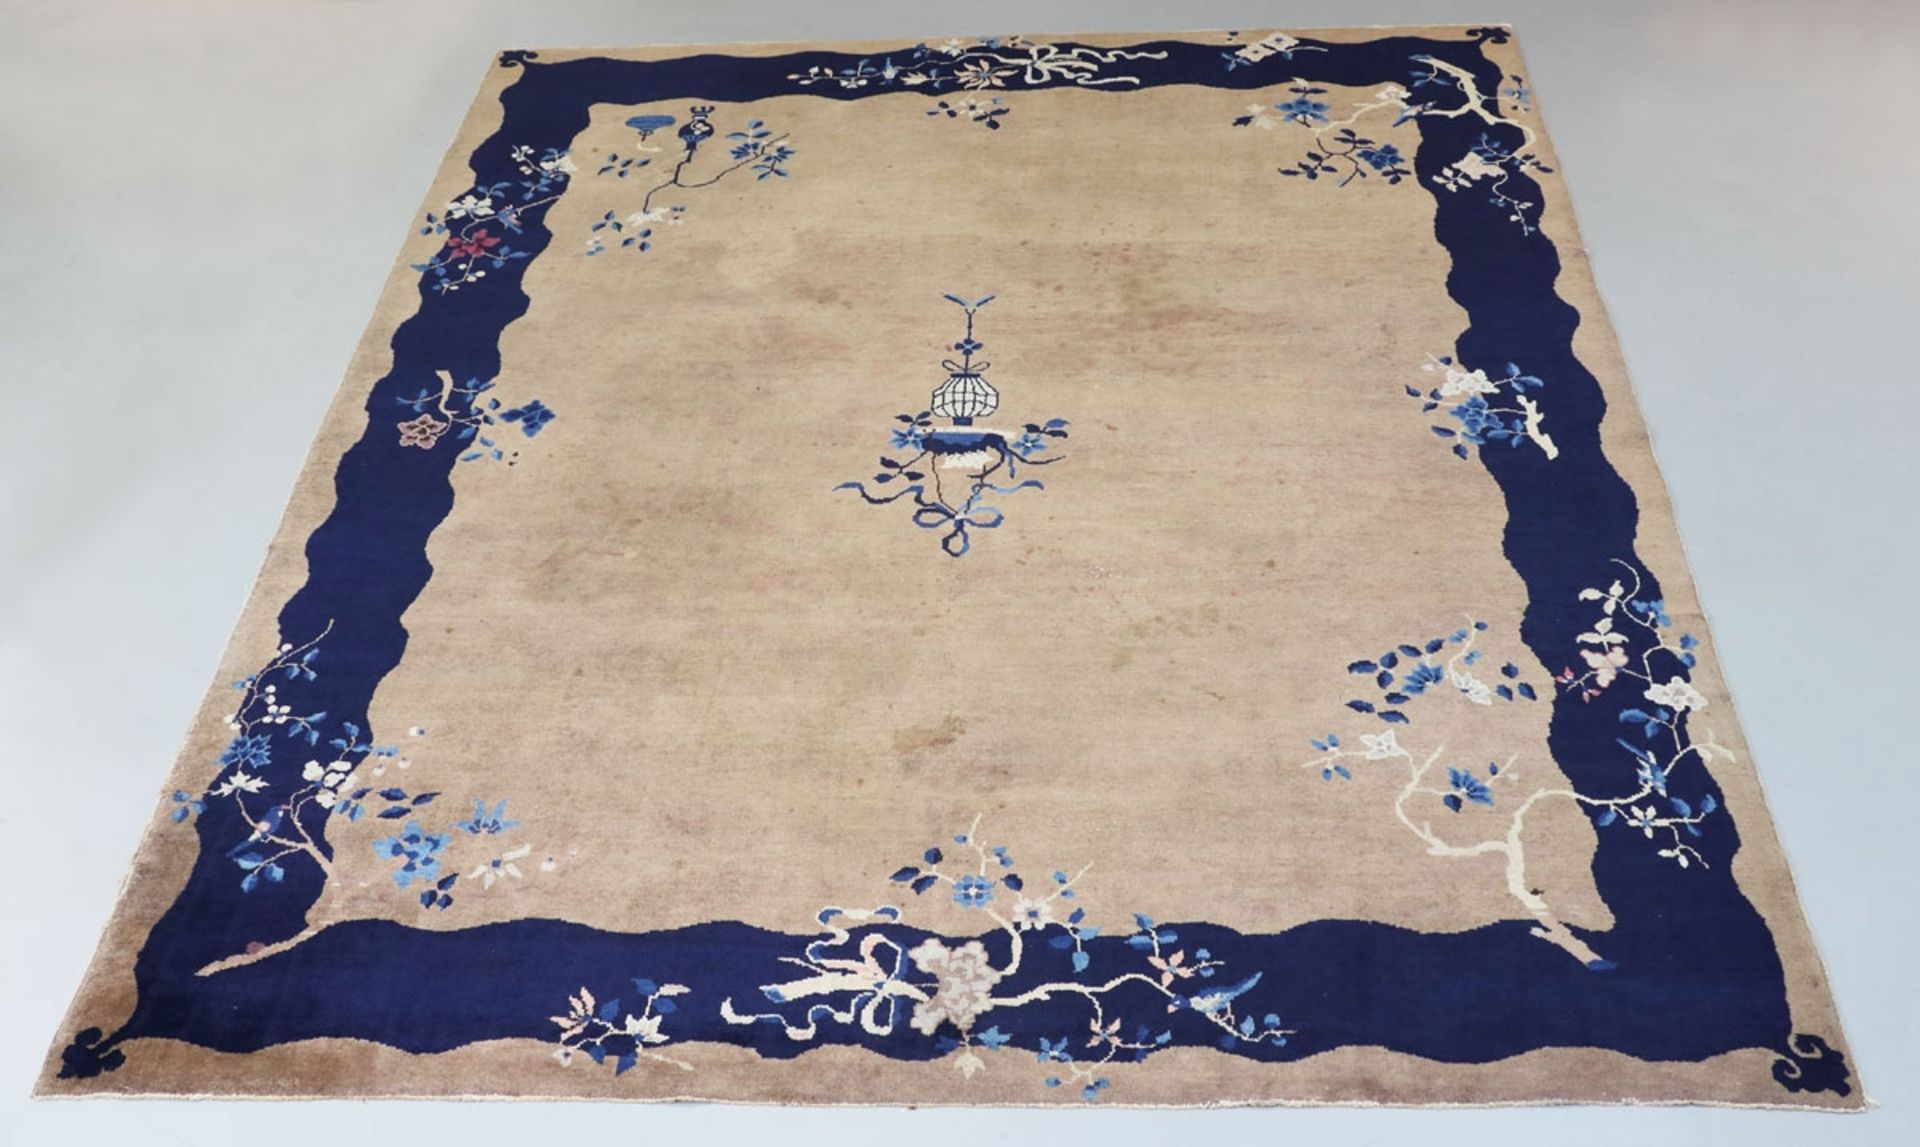 Teppich China, 20. Jahrhundert. Wolle. 294 x 241 cm. Beschm., Rd. tlw. etw. abgenutzt. Ockern